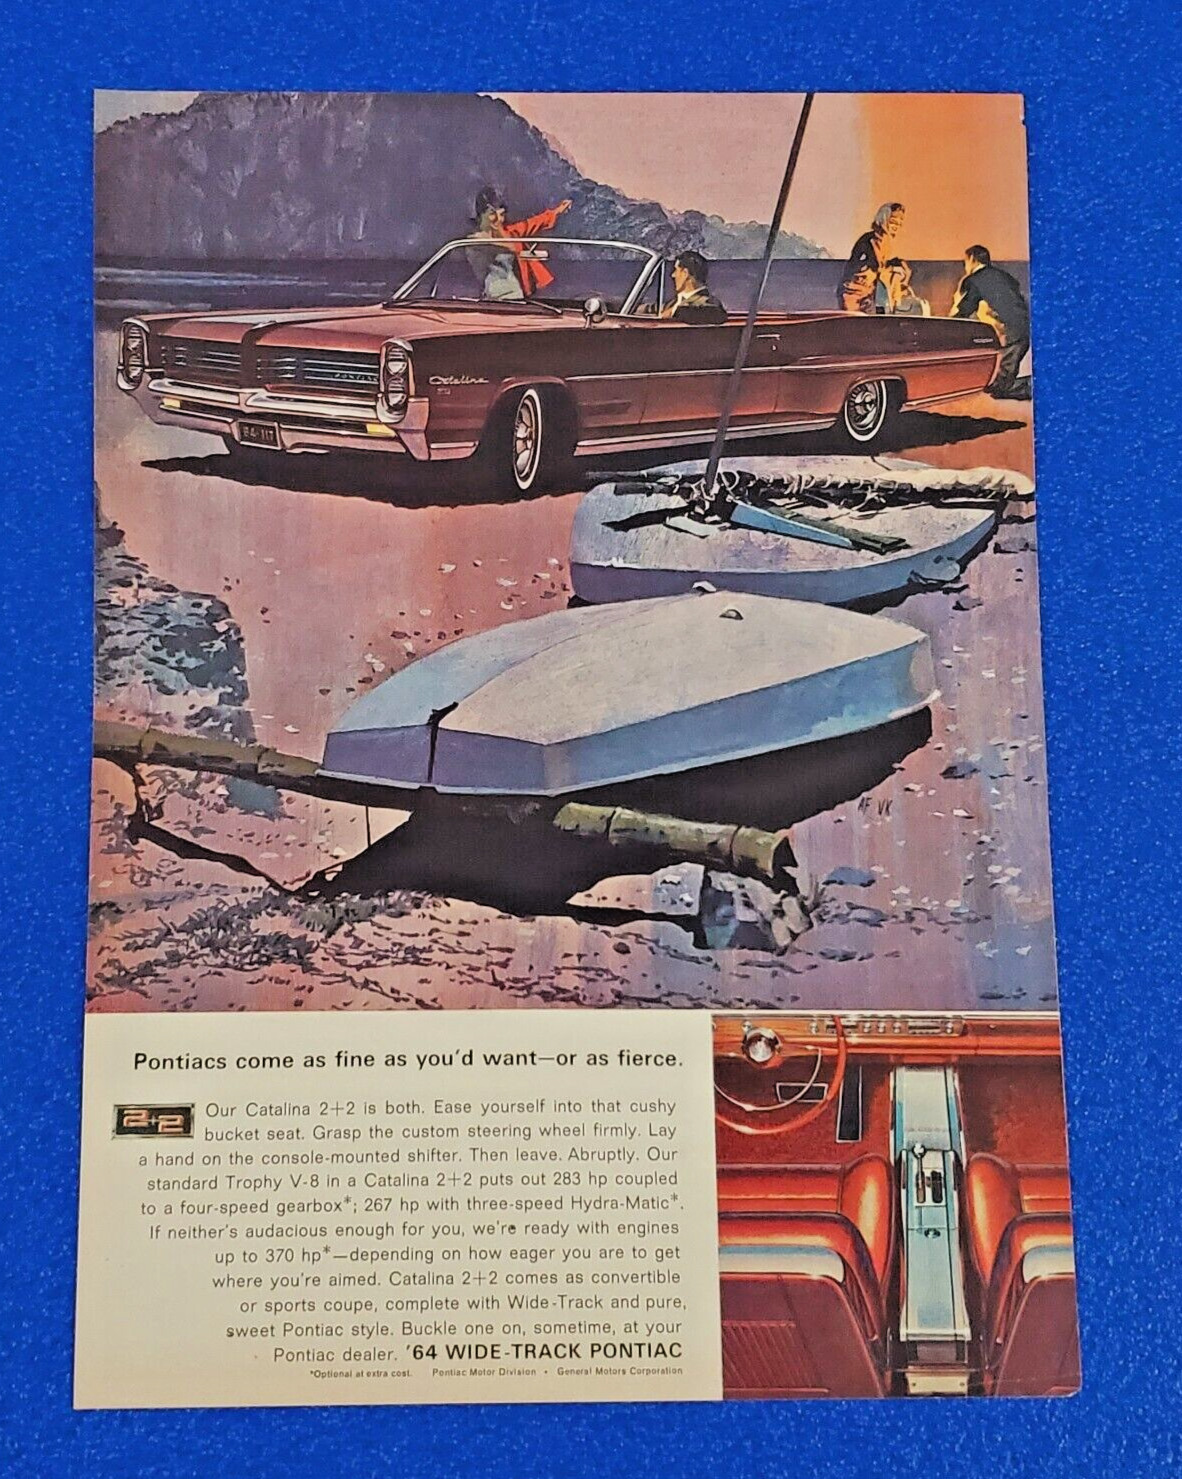 1964 PONTIAC CATALINA 2 + 2 TROPHY V8 ORIGINAL COLOR PRINT AD SHIPS FREE LOT RED